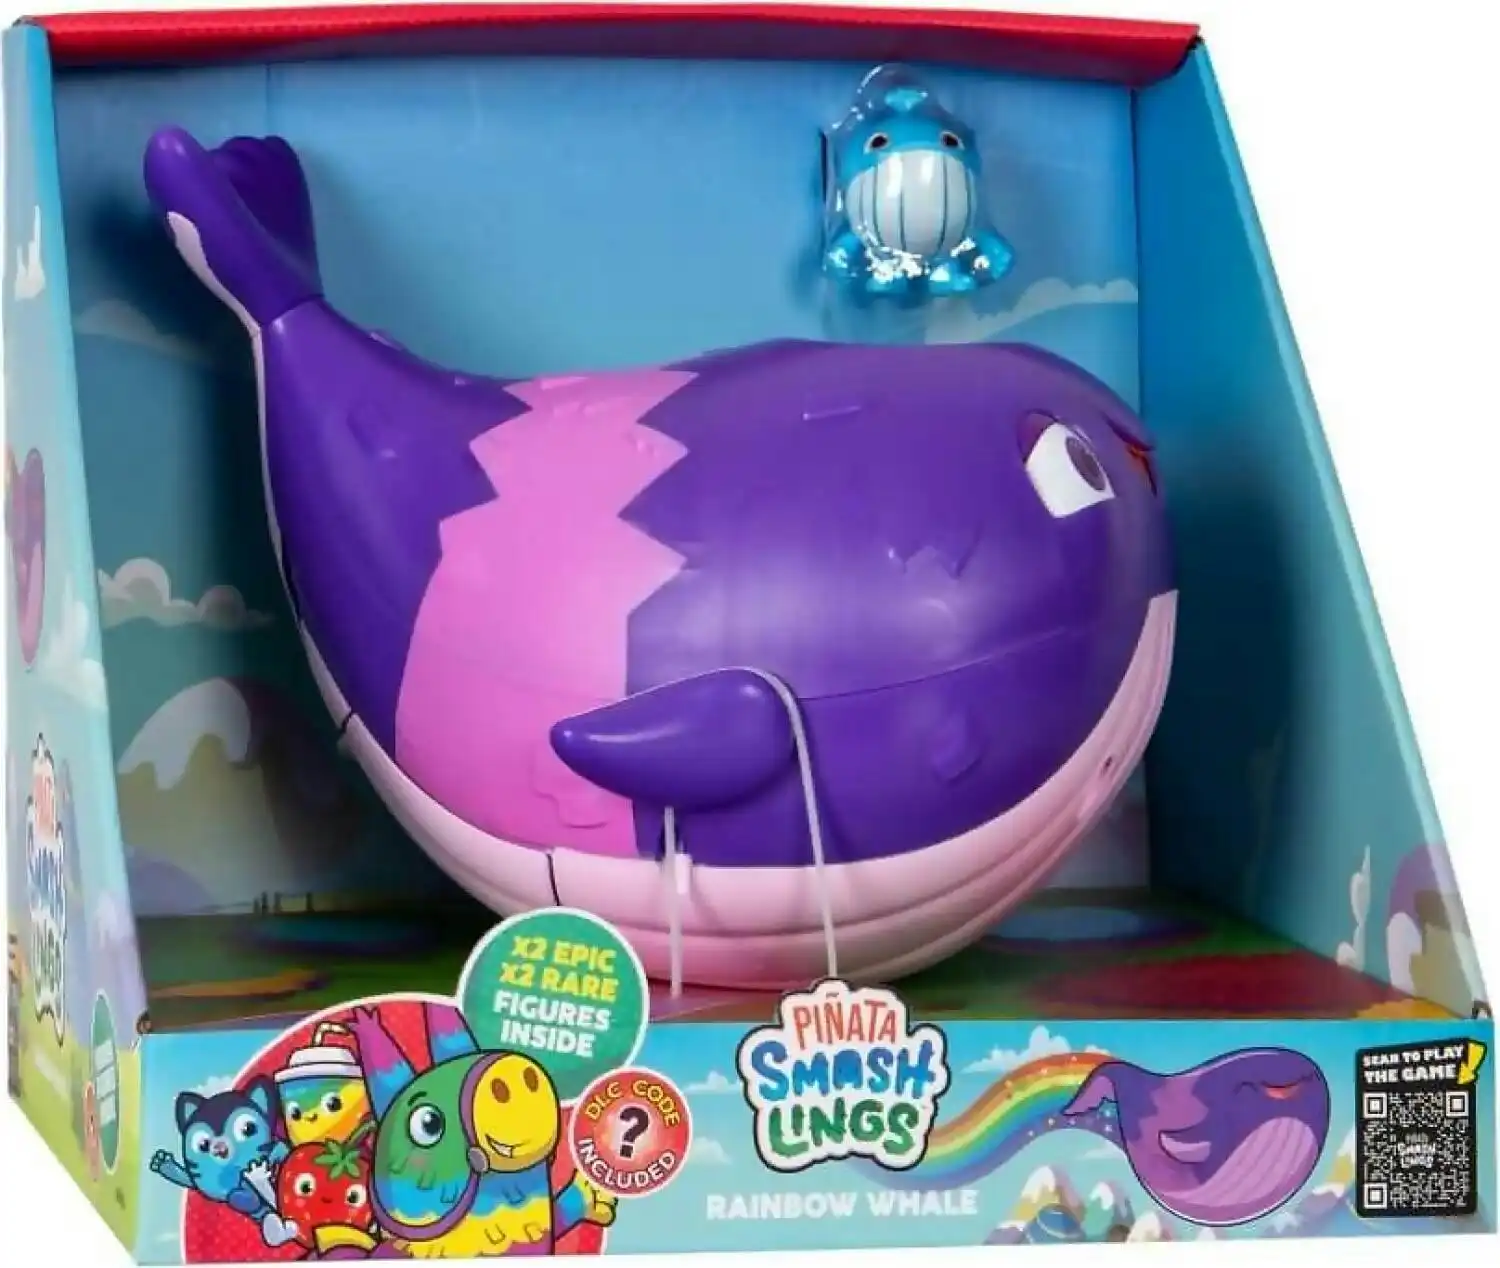 Smashlings - Pinata Smashlings Rainbow Whale Playset